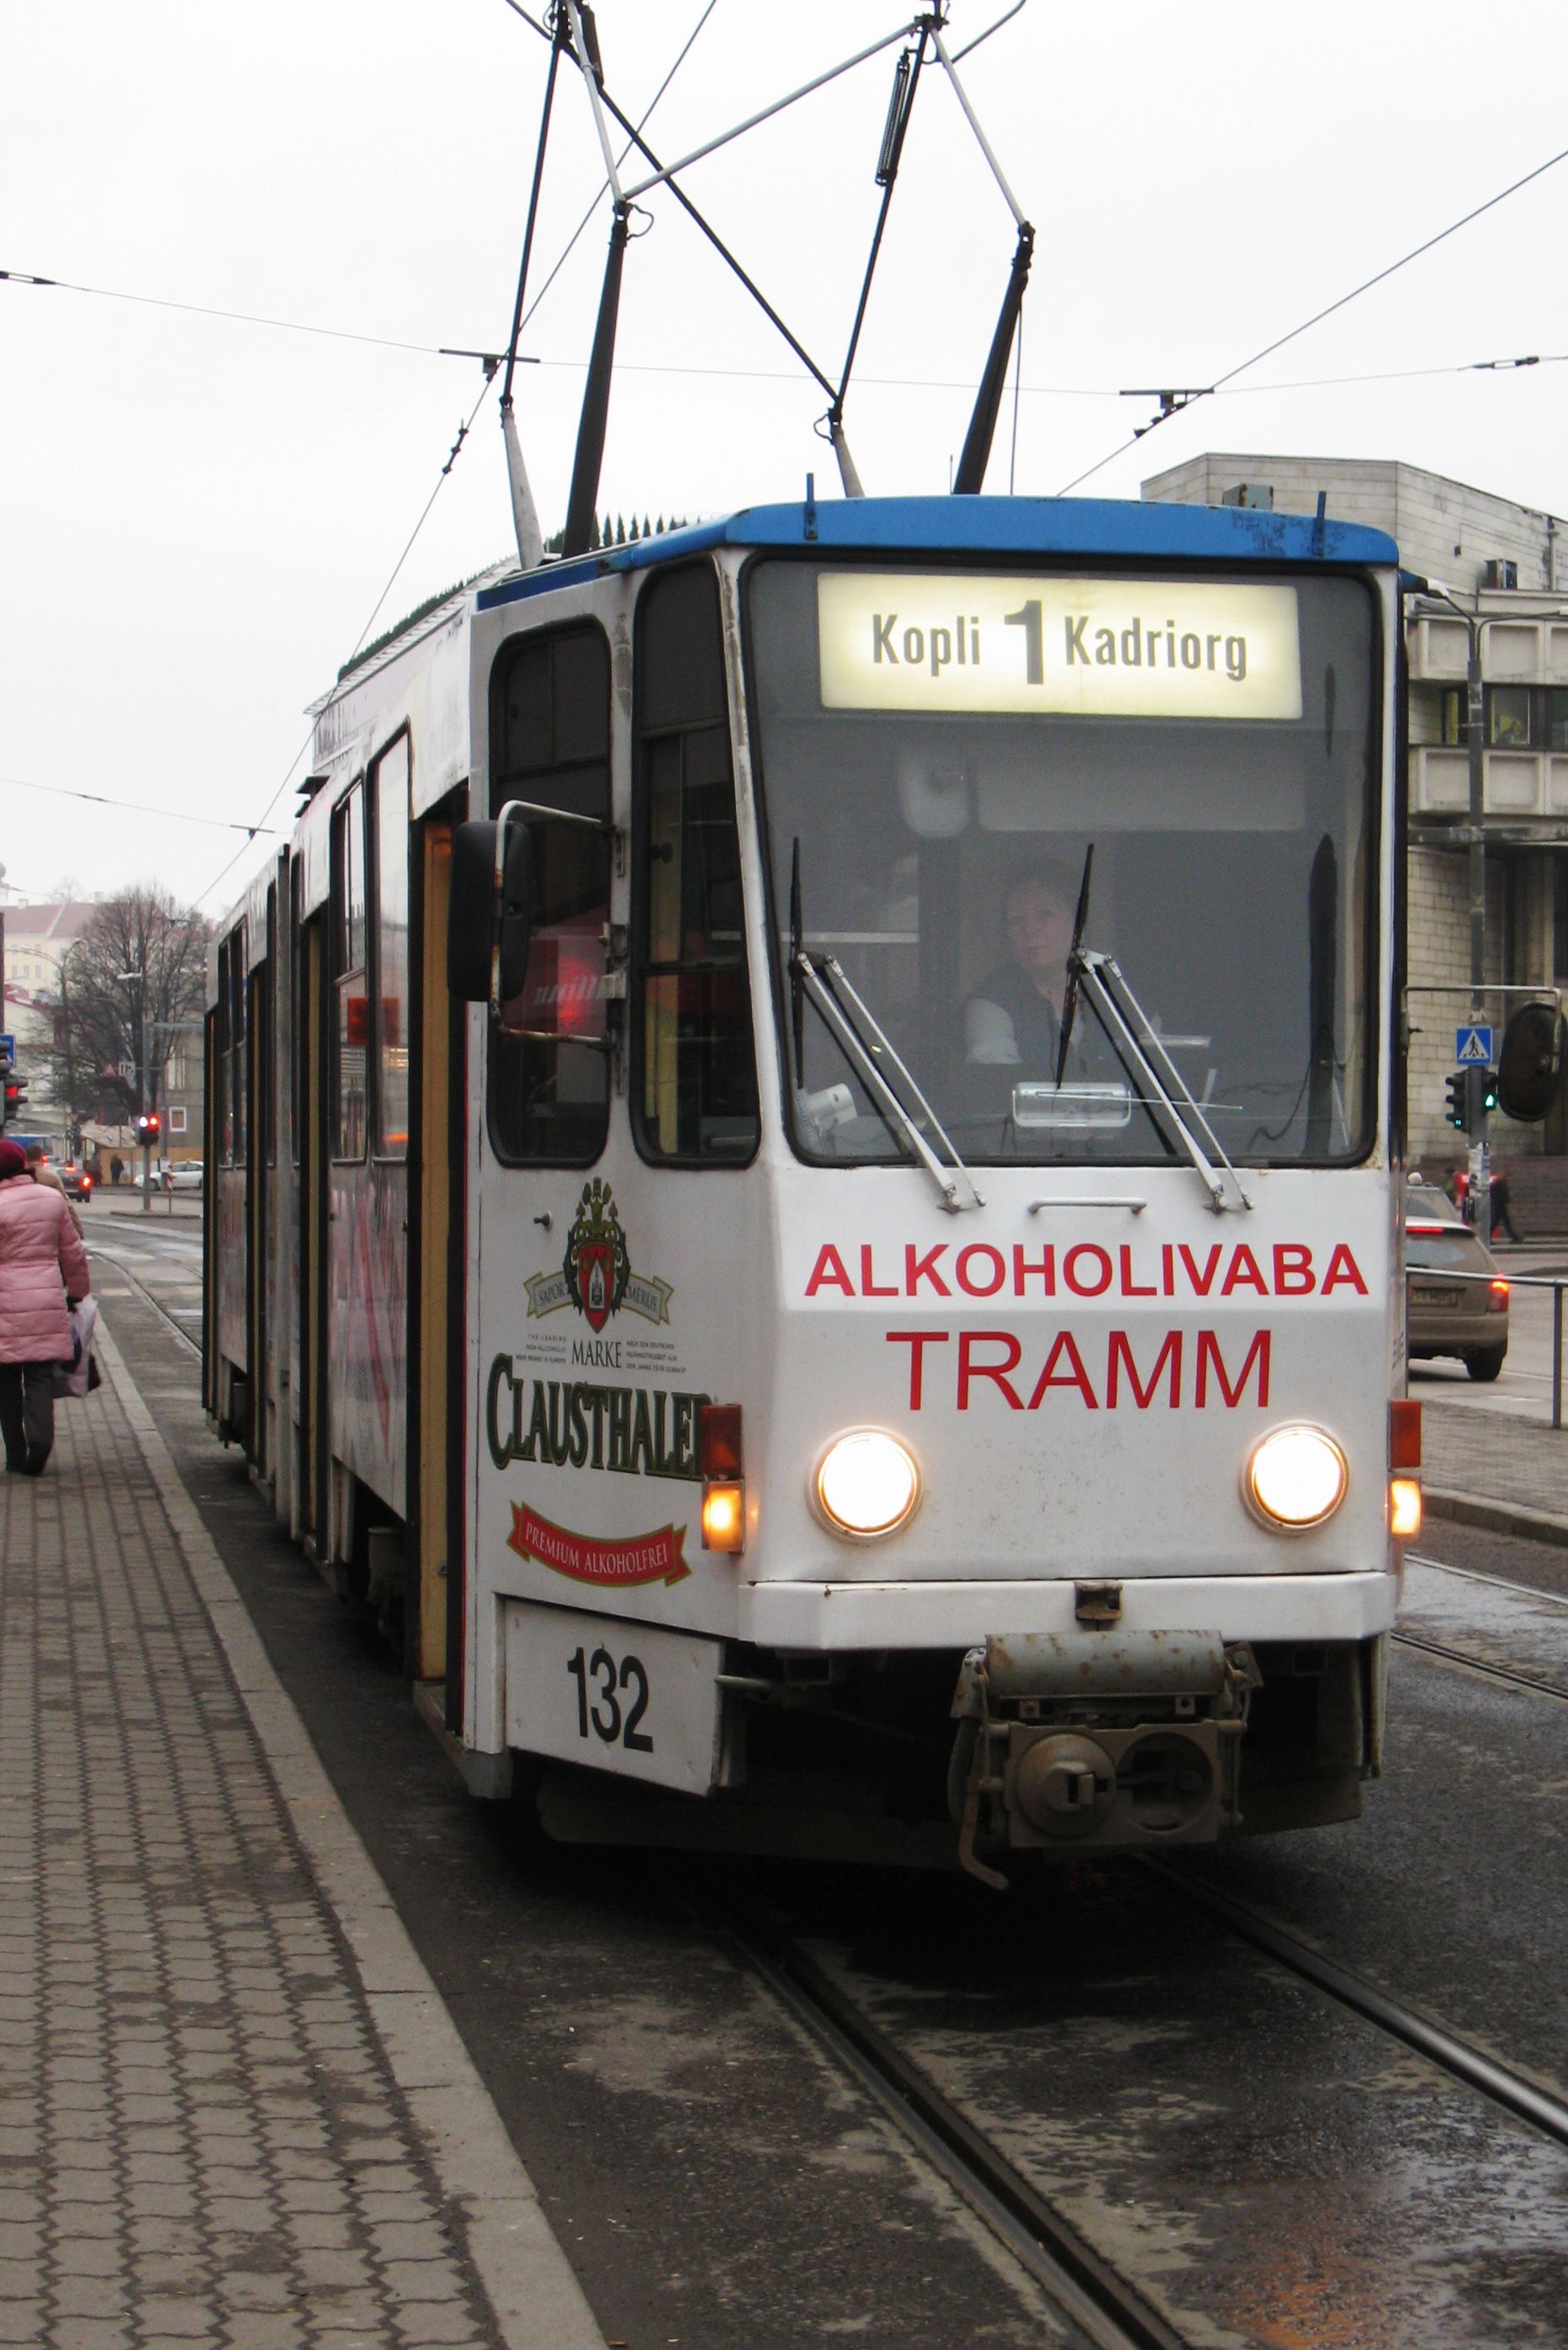 Illustreeriv pilt on aastast 2007, mil Kopli liinil sõitis "alkoholivaba tramm".